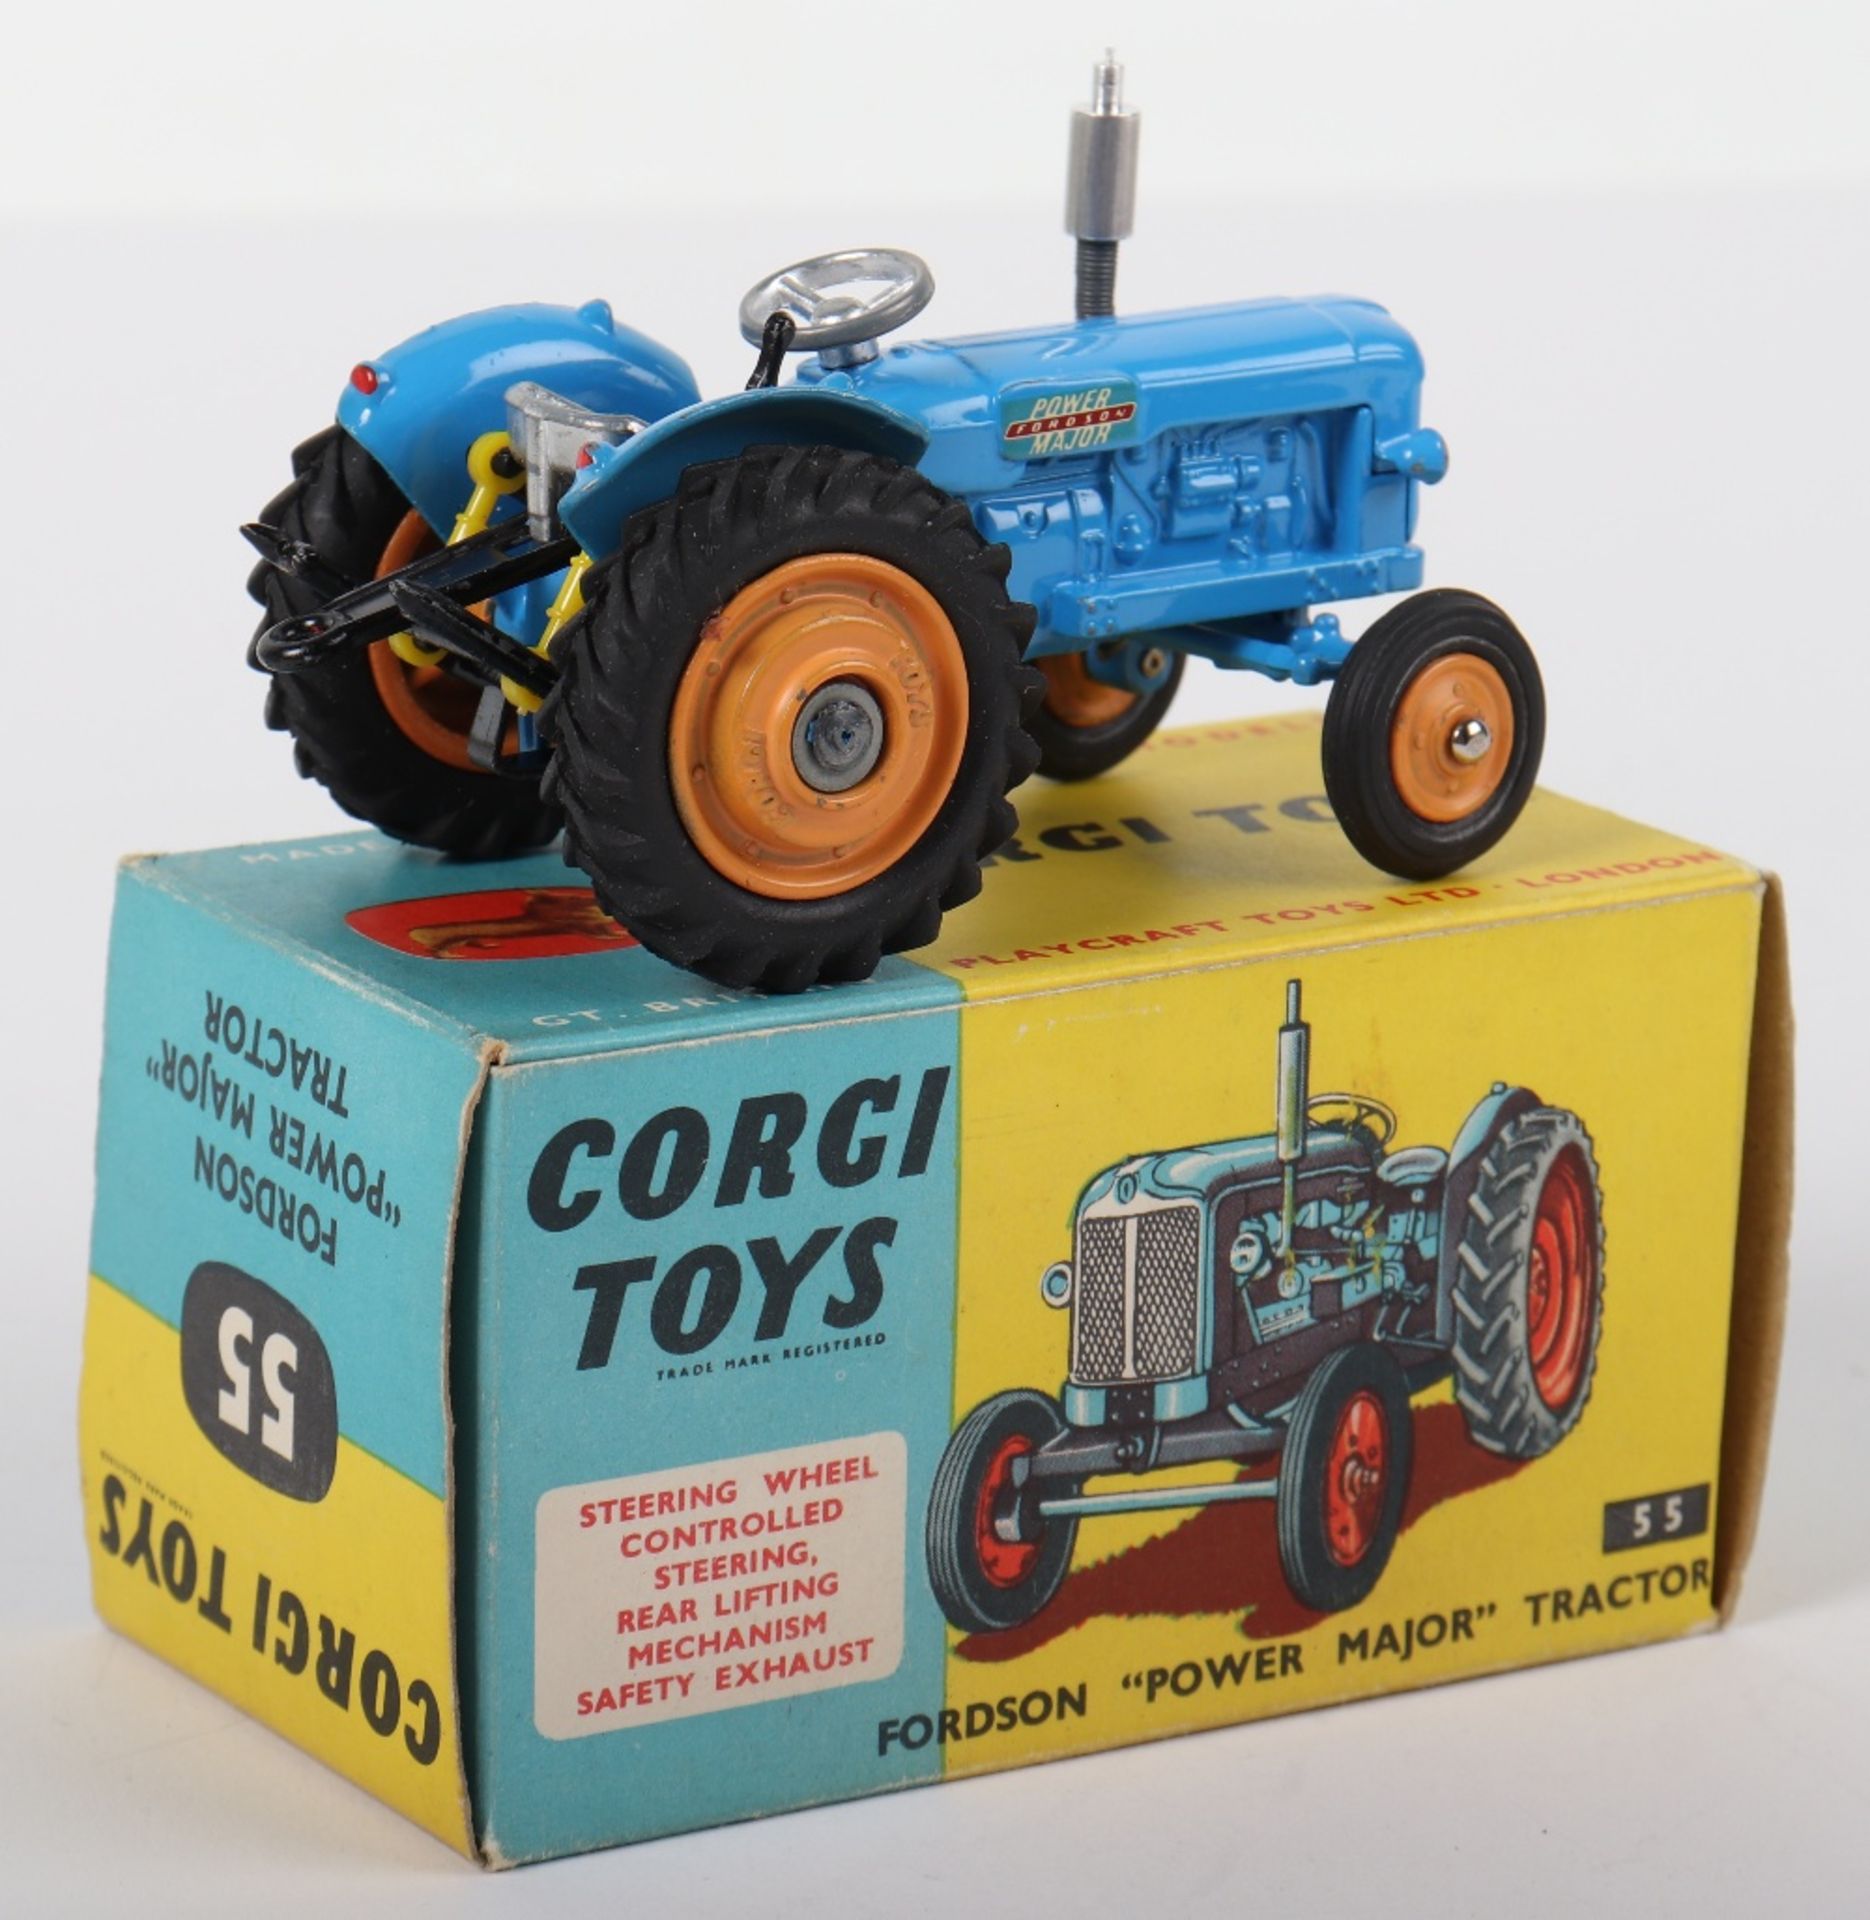 Boxed Corgi Toys 55 Fordson “Power Major” Tractor - Bild 3 aus 3